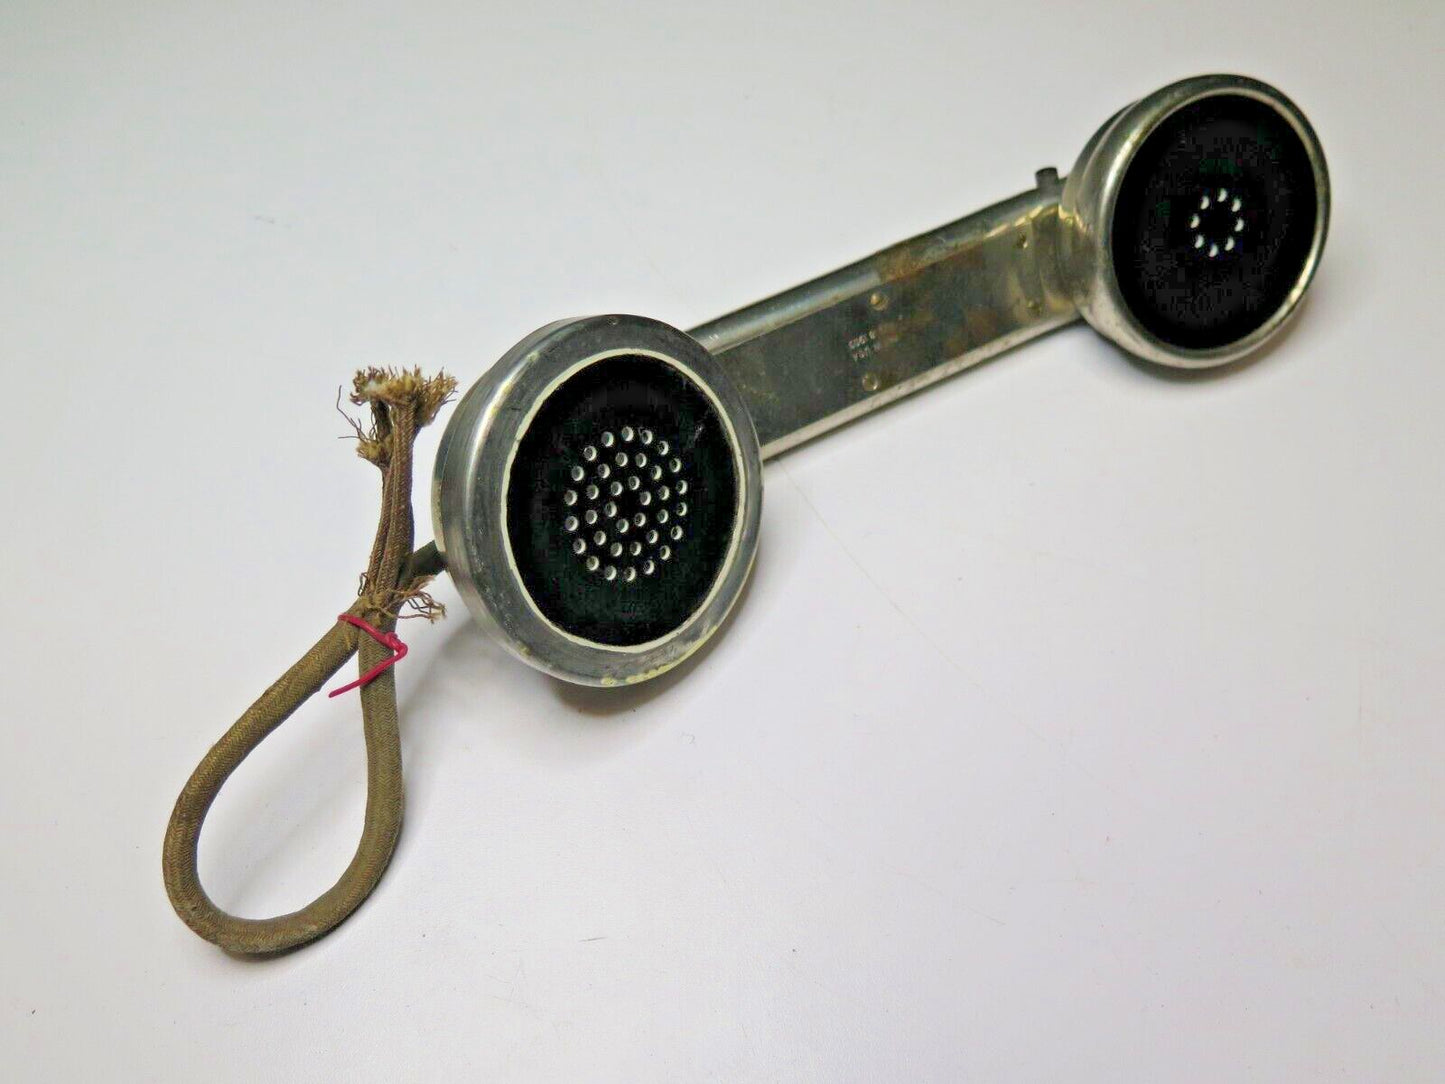 WESTERN ELECTRIC LINESMAN'S FIELD PHONE HANDSET HEAVY BRASS 244 W - CA. 1900